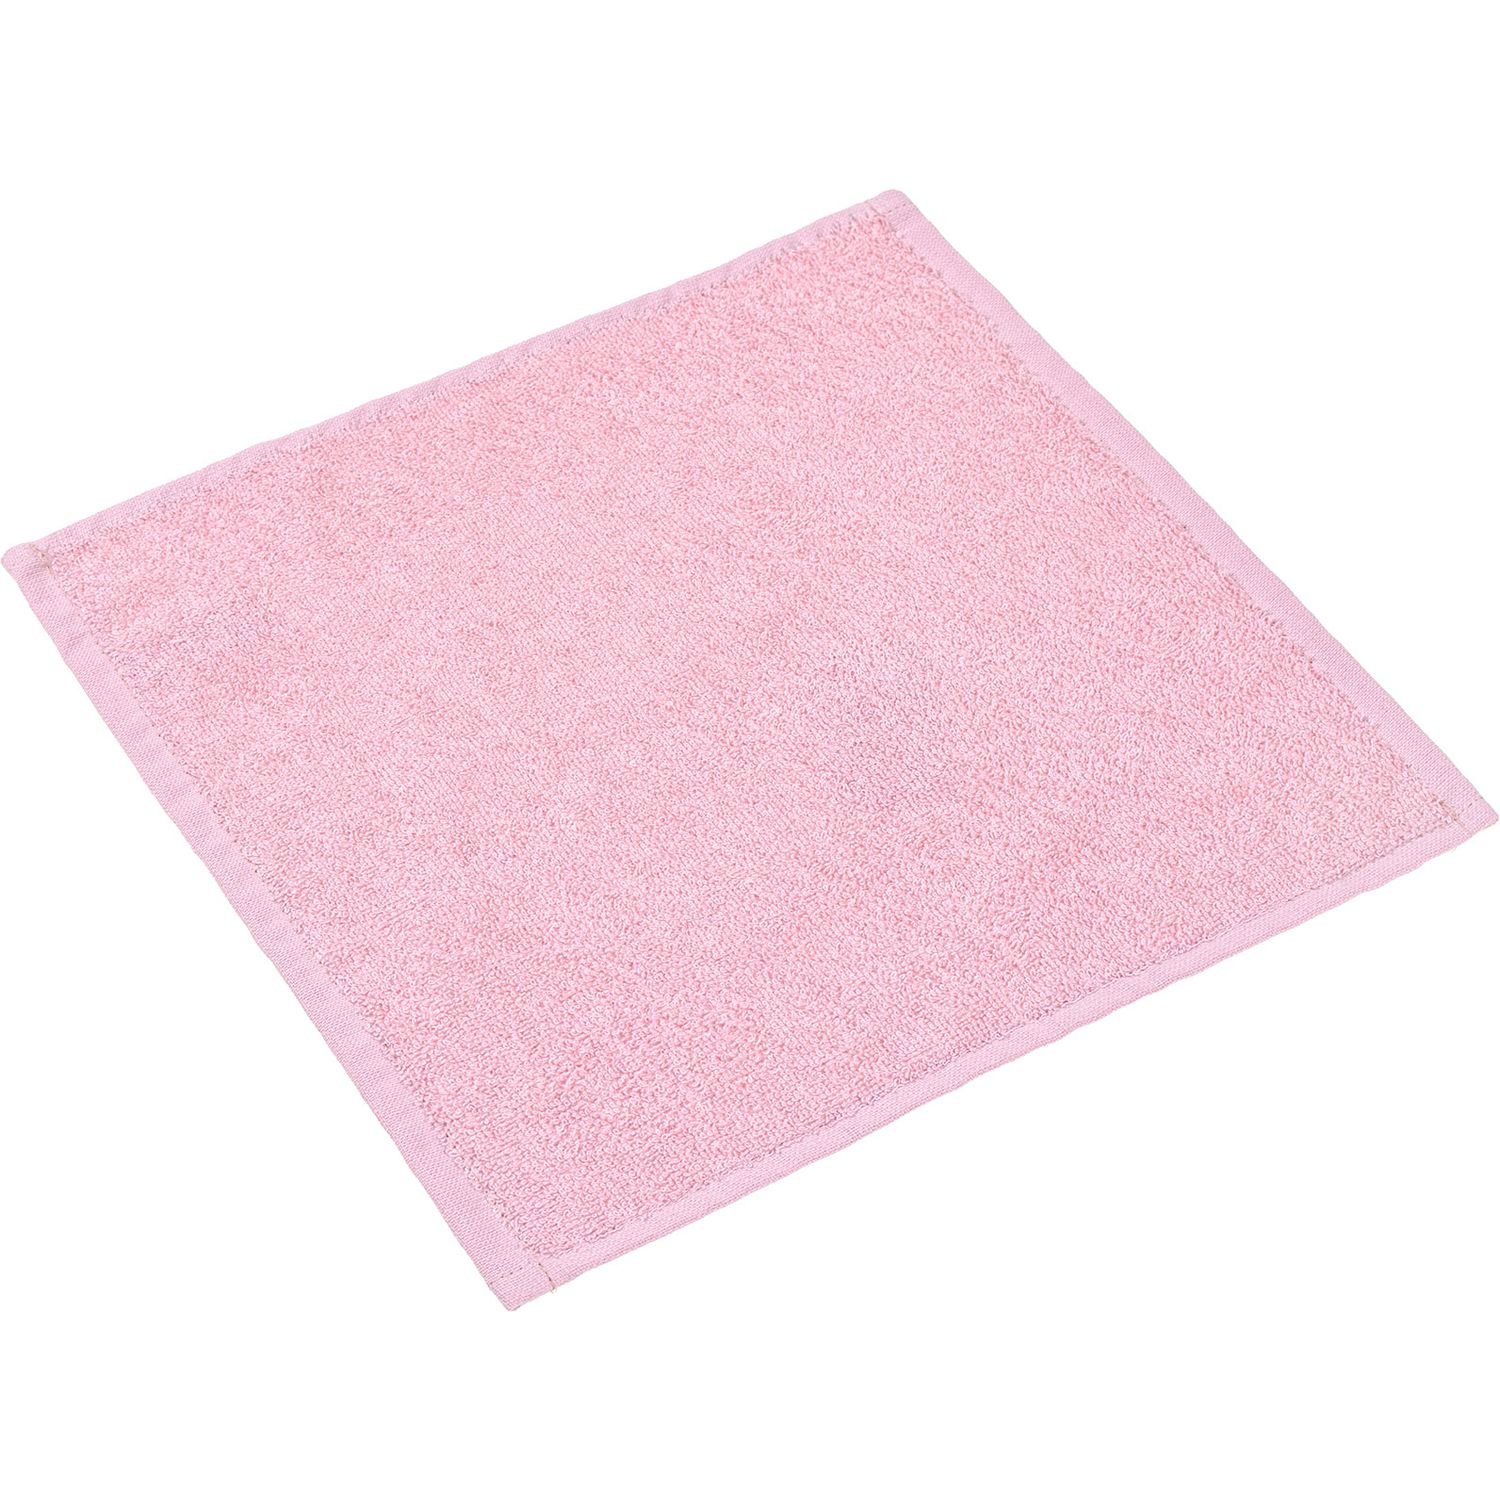 Рушник (серветка) Home Line махровий, 30х30 см, рожевий (174519) - фото 1